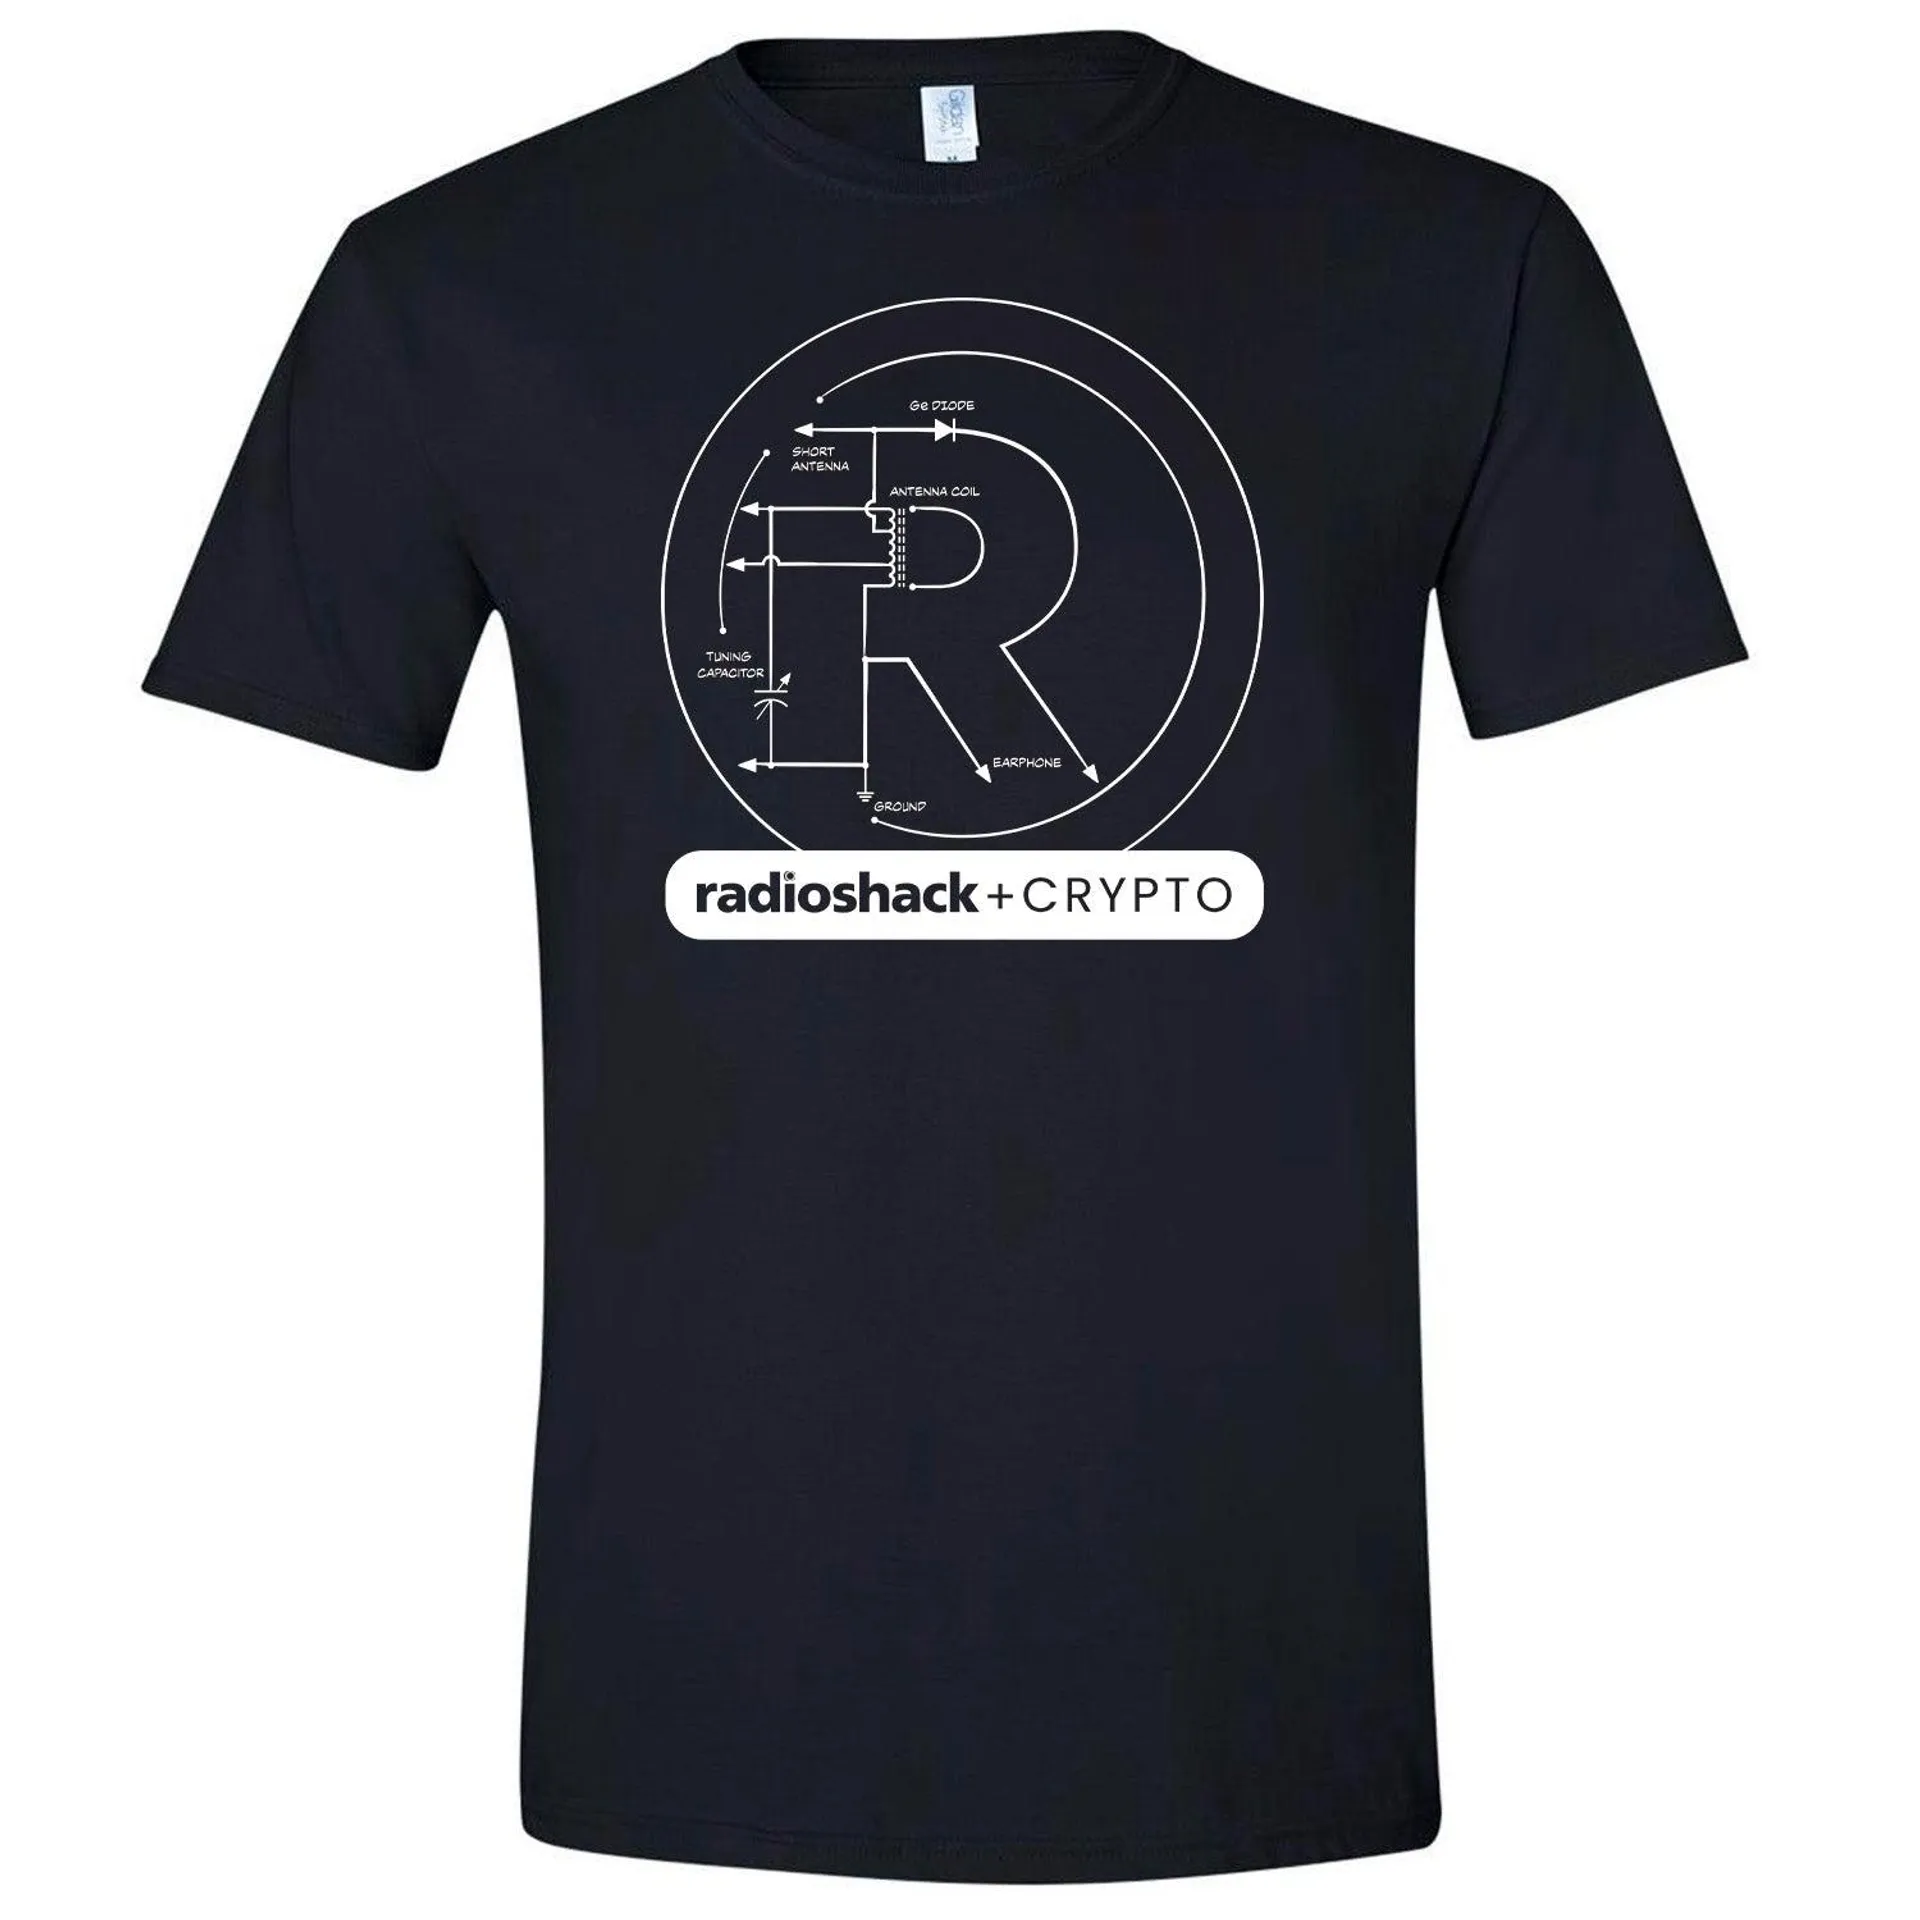 Radioshack + Crypto Unisex T-shirt